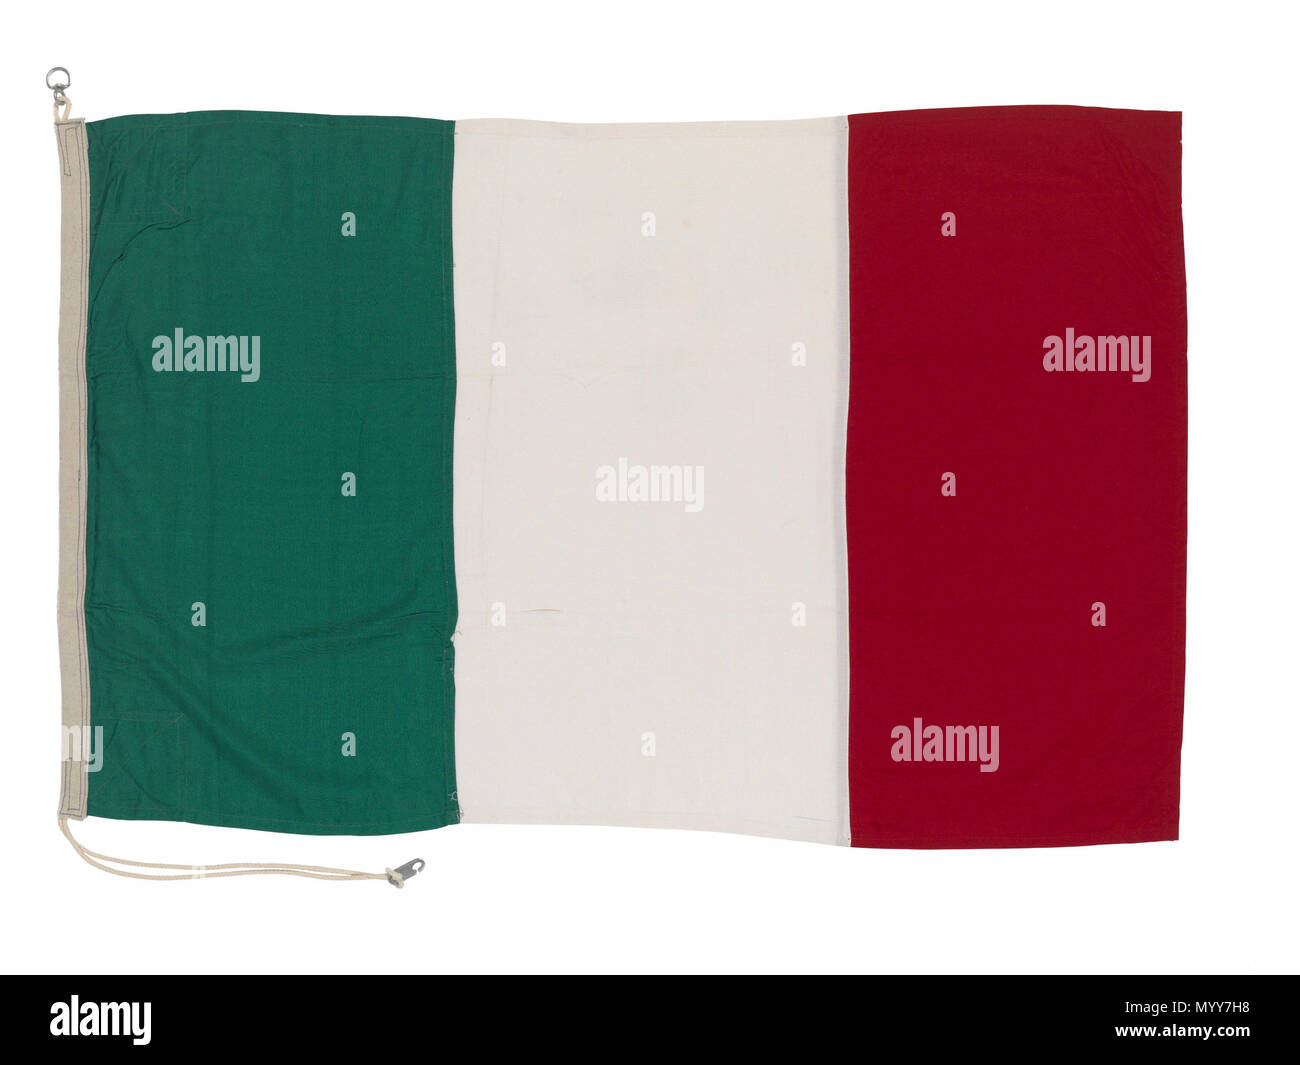 . Englisch: Nationalflagge von Italien (nach 1946) Post 1946 italienische Nationalflagge aus synthetischen Fasern bunting mit Baumwolle und Leinen Mischung Hoist. Die Flagge ist Maschine genäht mit einem Seil und zwei Aluminium Klammern befestigt. Es hat drei vertikale Streifen in Grün, Weiß und Rot. Nationalflagge von Italien (nach 1946). Nach 1946. Rudolph Equitz&Co 73 nationale Flagge von Italien (nach 1946) RMG-L 0134 Stockfoto